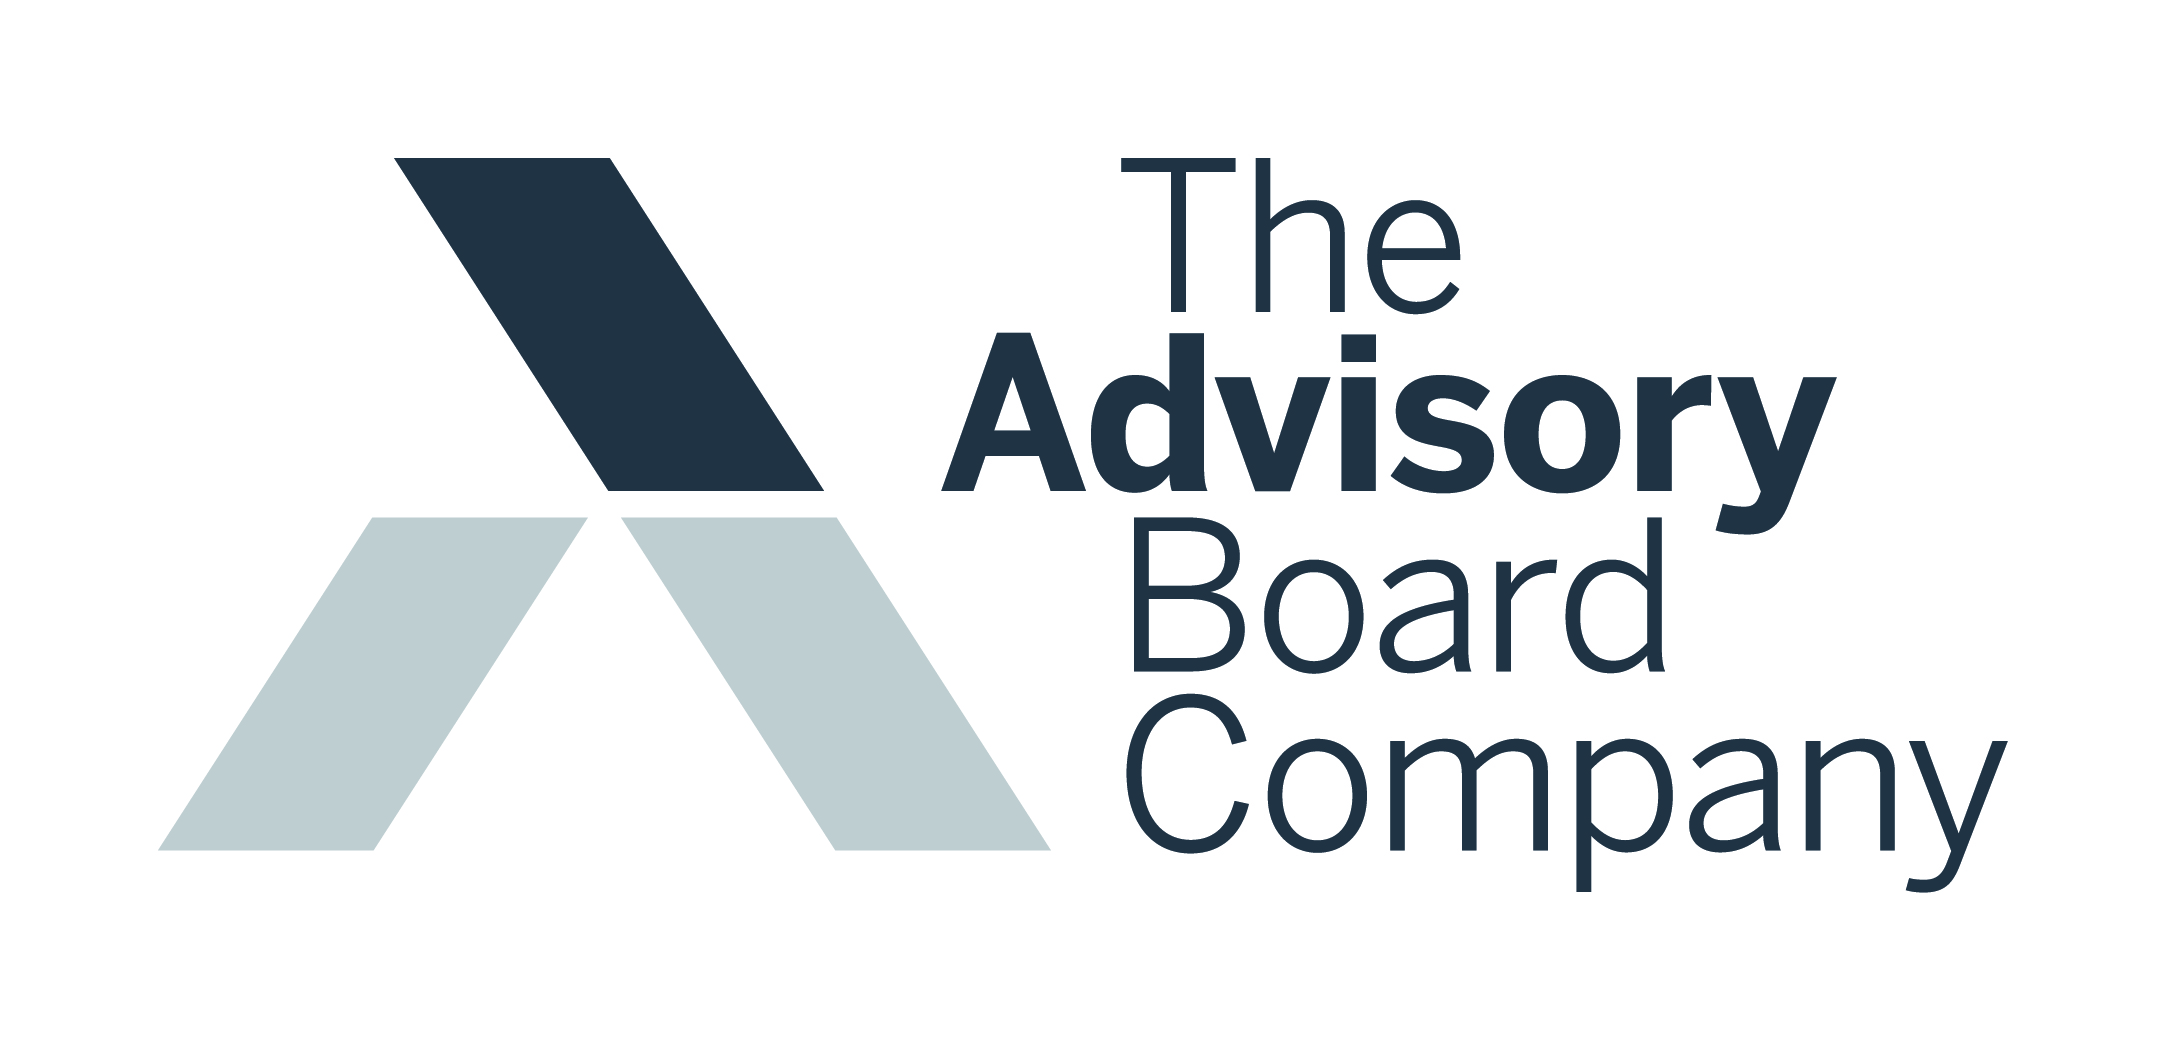 The Advisory Board Company Wikipedia